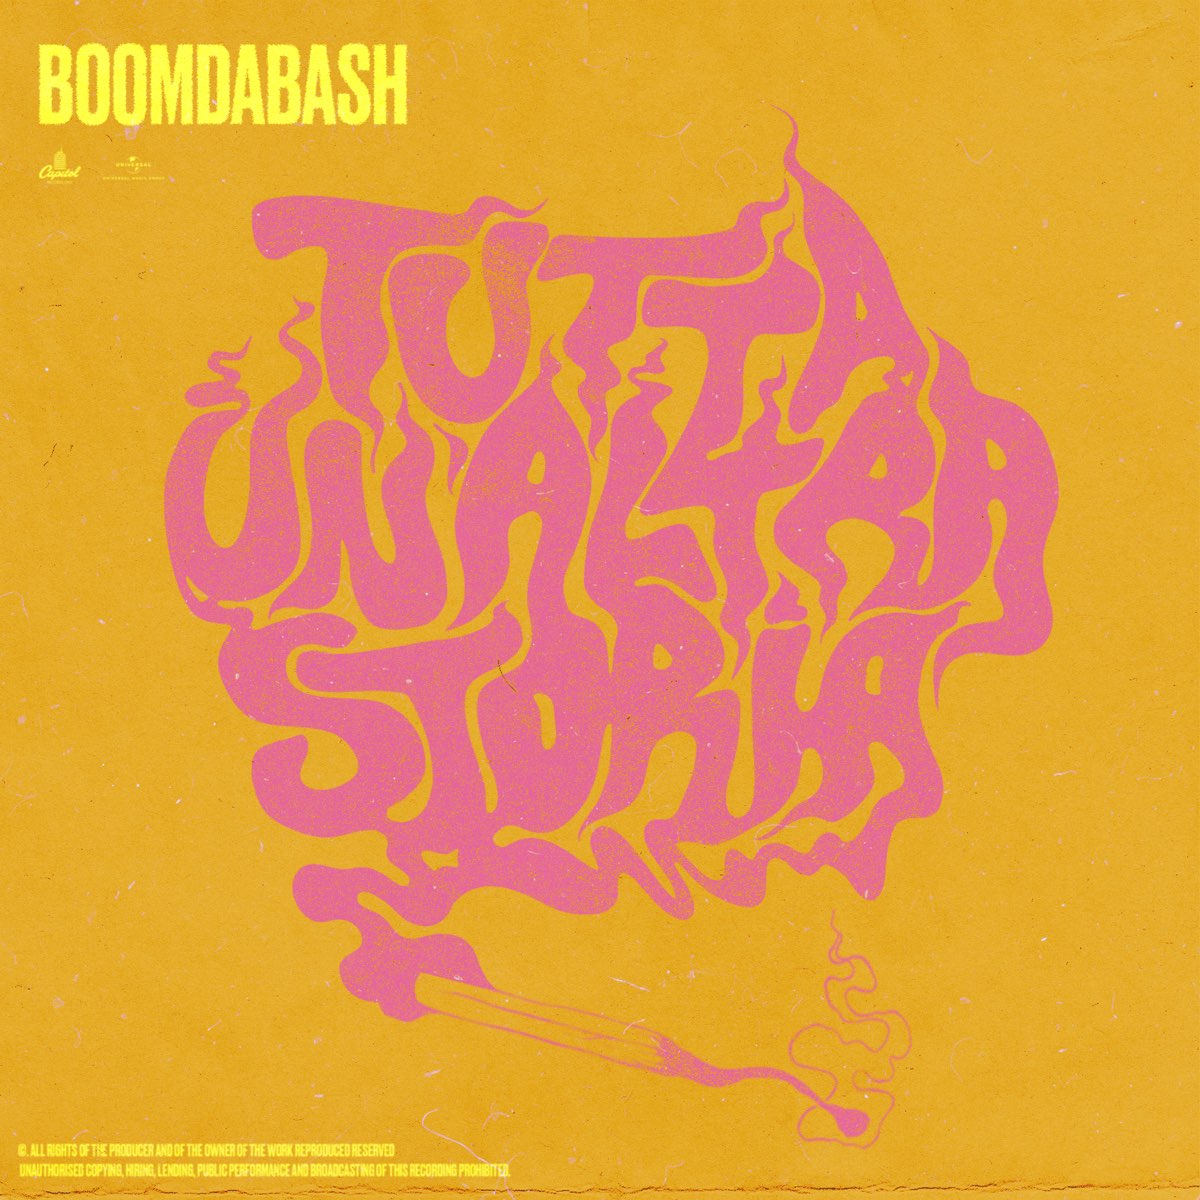 Boomdabash - Tutta un'altra storia - Testo e Significato